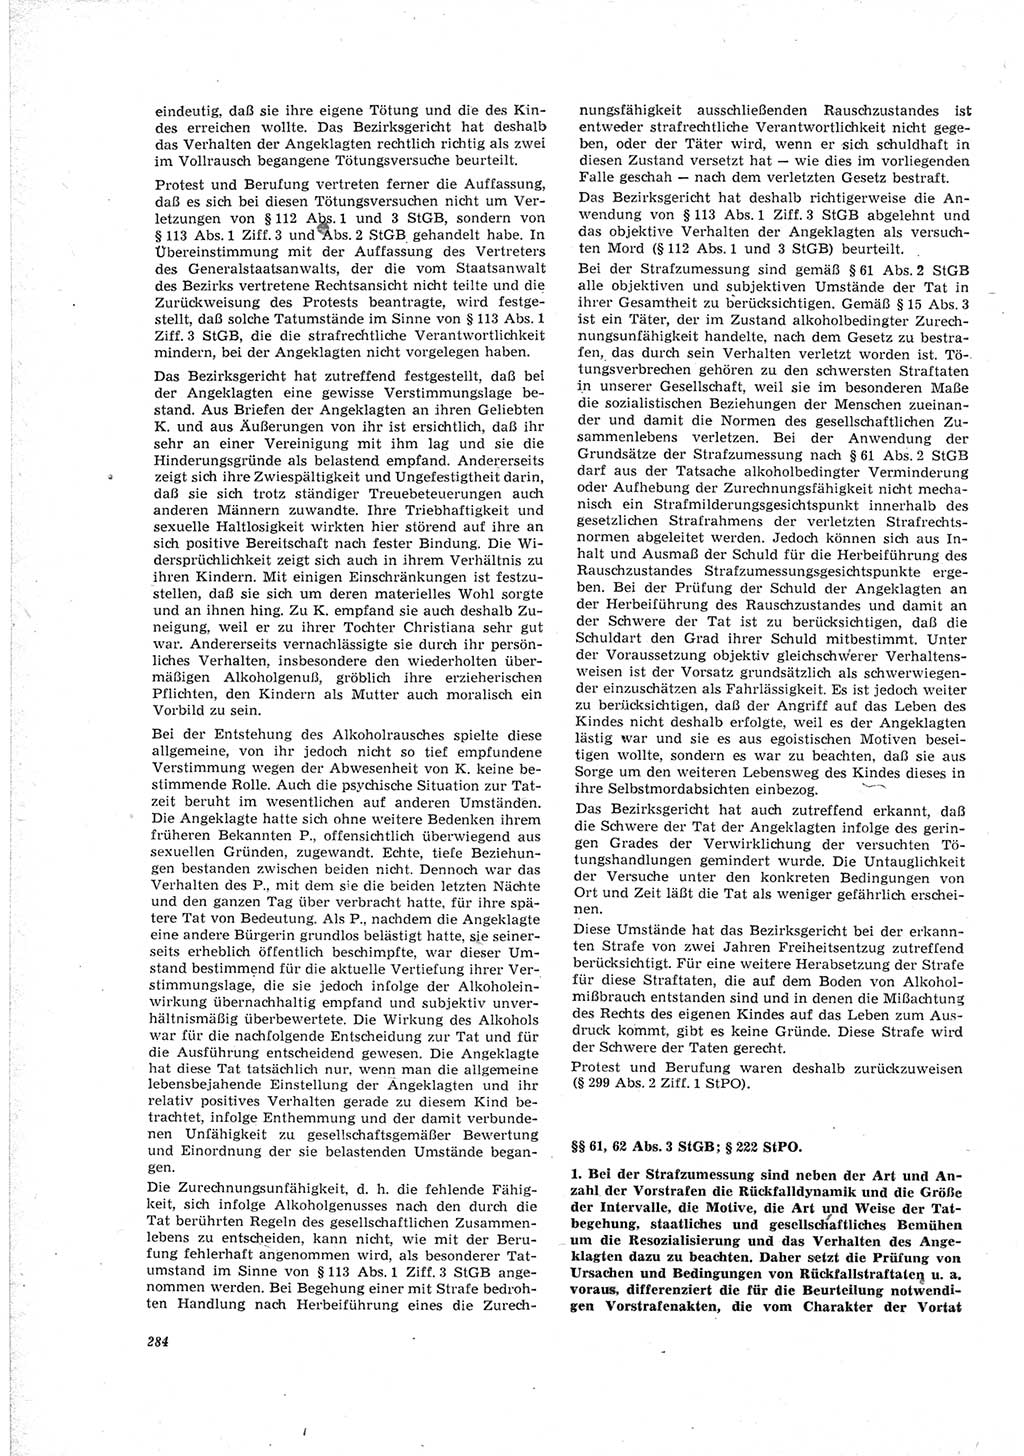 Neue Justiz (NJ), Zeitschrift für Recht und Rechtswissenschaft [Deutsche Demokratische Republik (DDR)], 23. Jahrgang 1969, Seite 284 (NJ DDR 1969, S. 284)